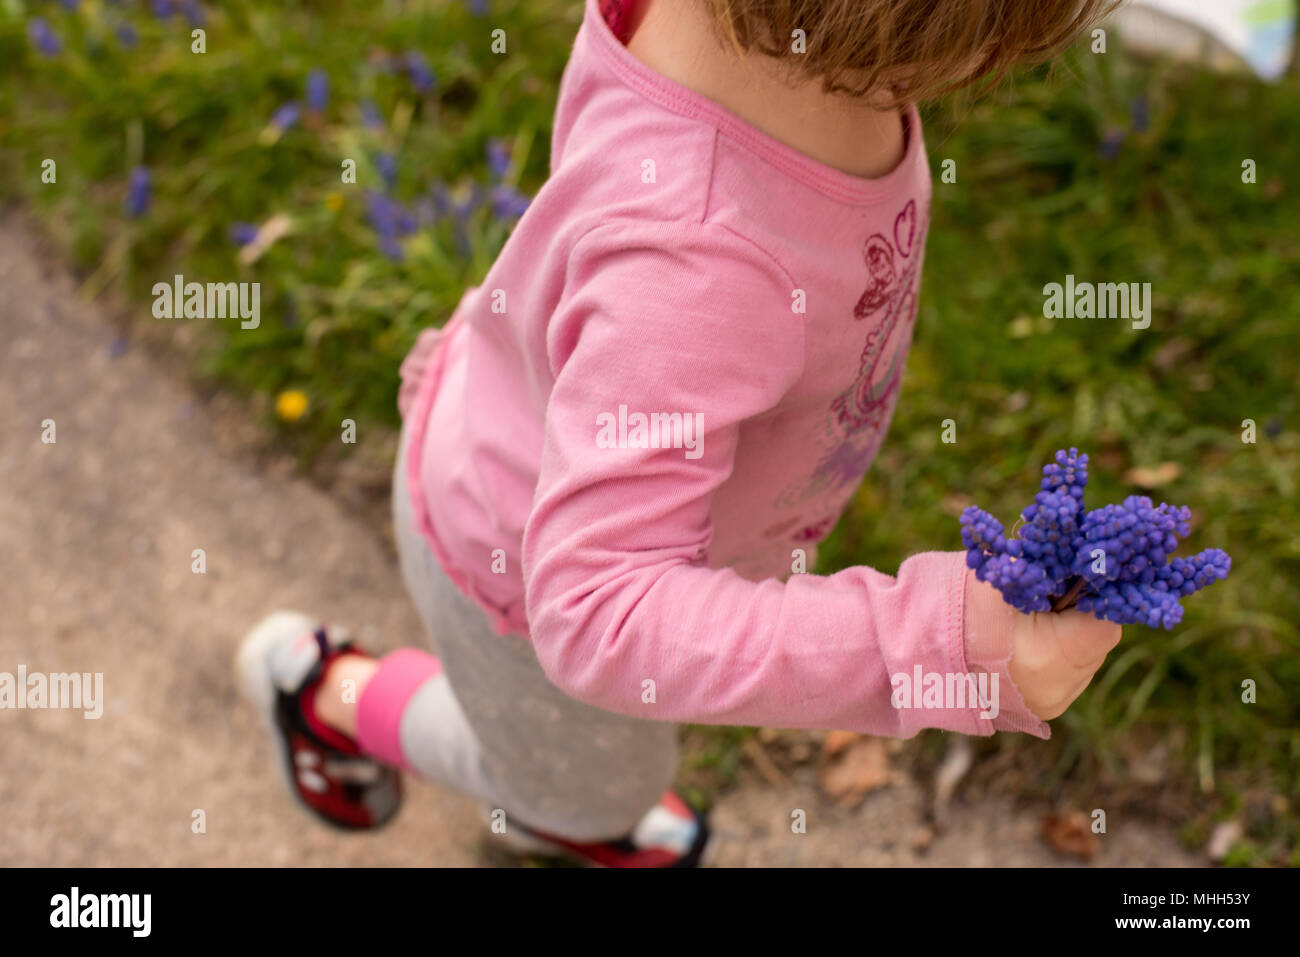 Ein kleines Mädchen hält einen Strauß lila Hyazinthen Blumen im Frühjahr. Stockfoto